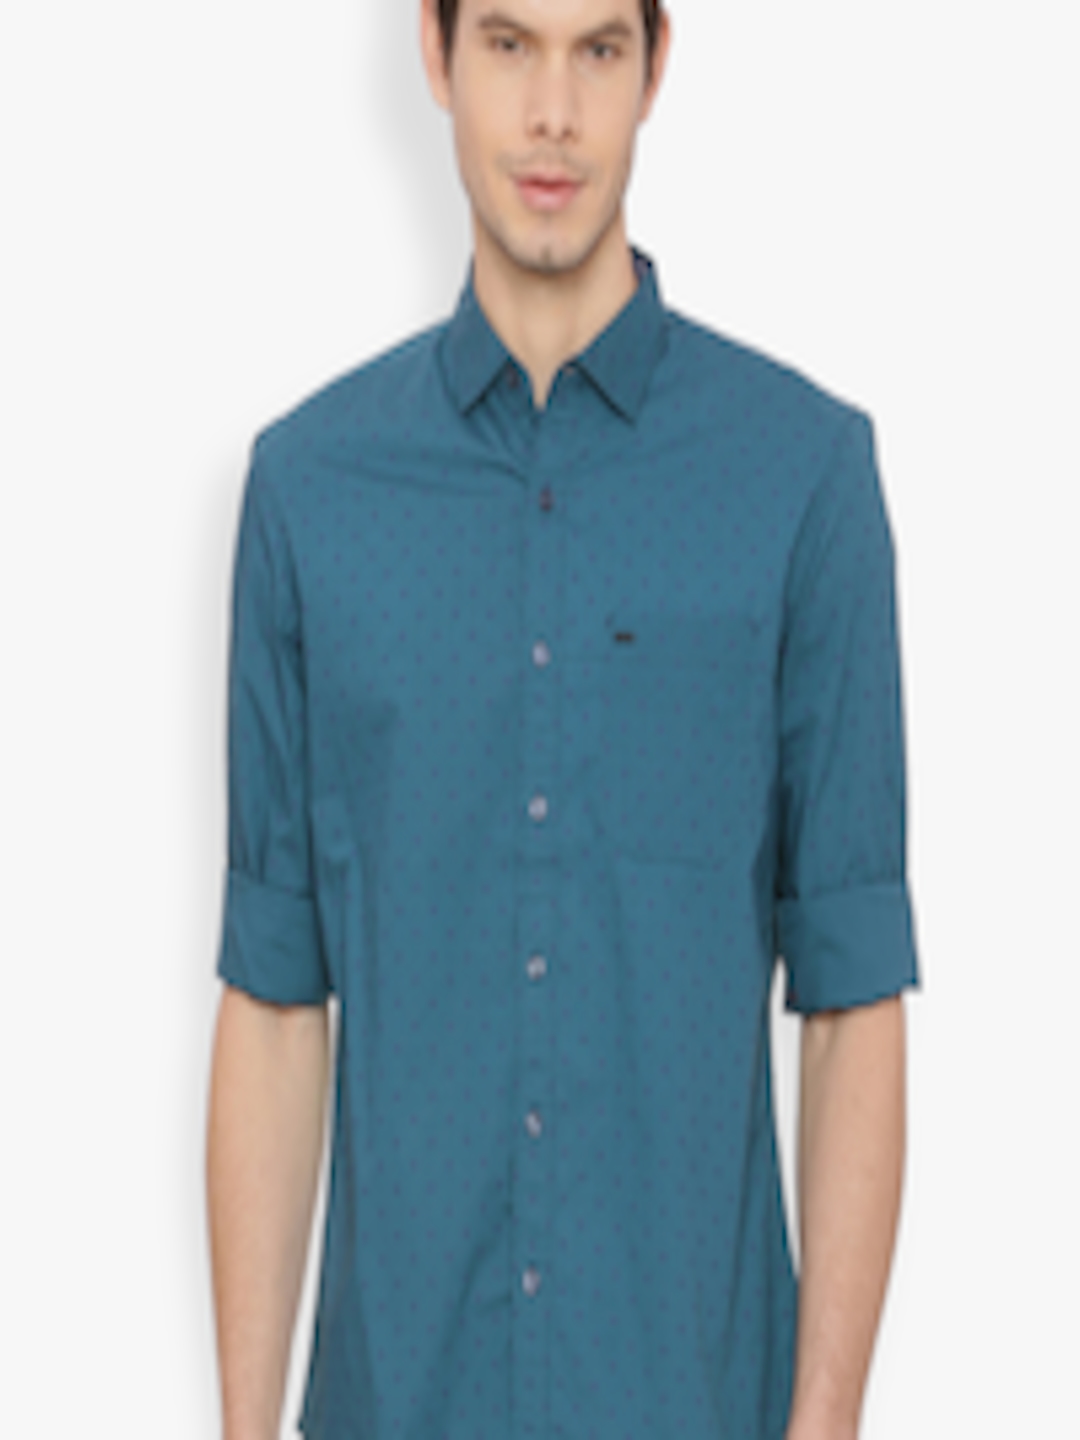 Buy Basics Men Teal Slim Fit Printed Casual Shirt - Shirts for Men ...